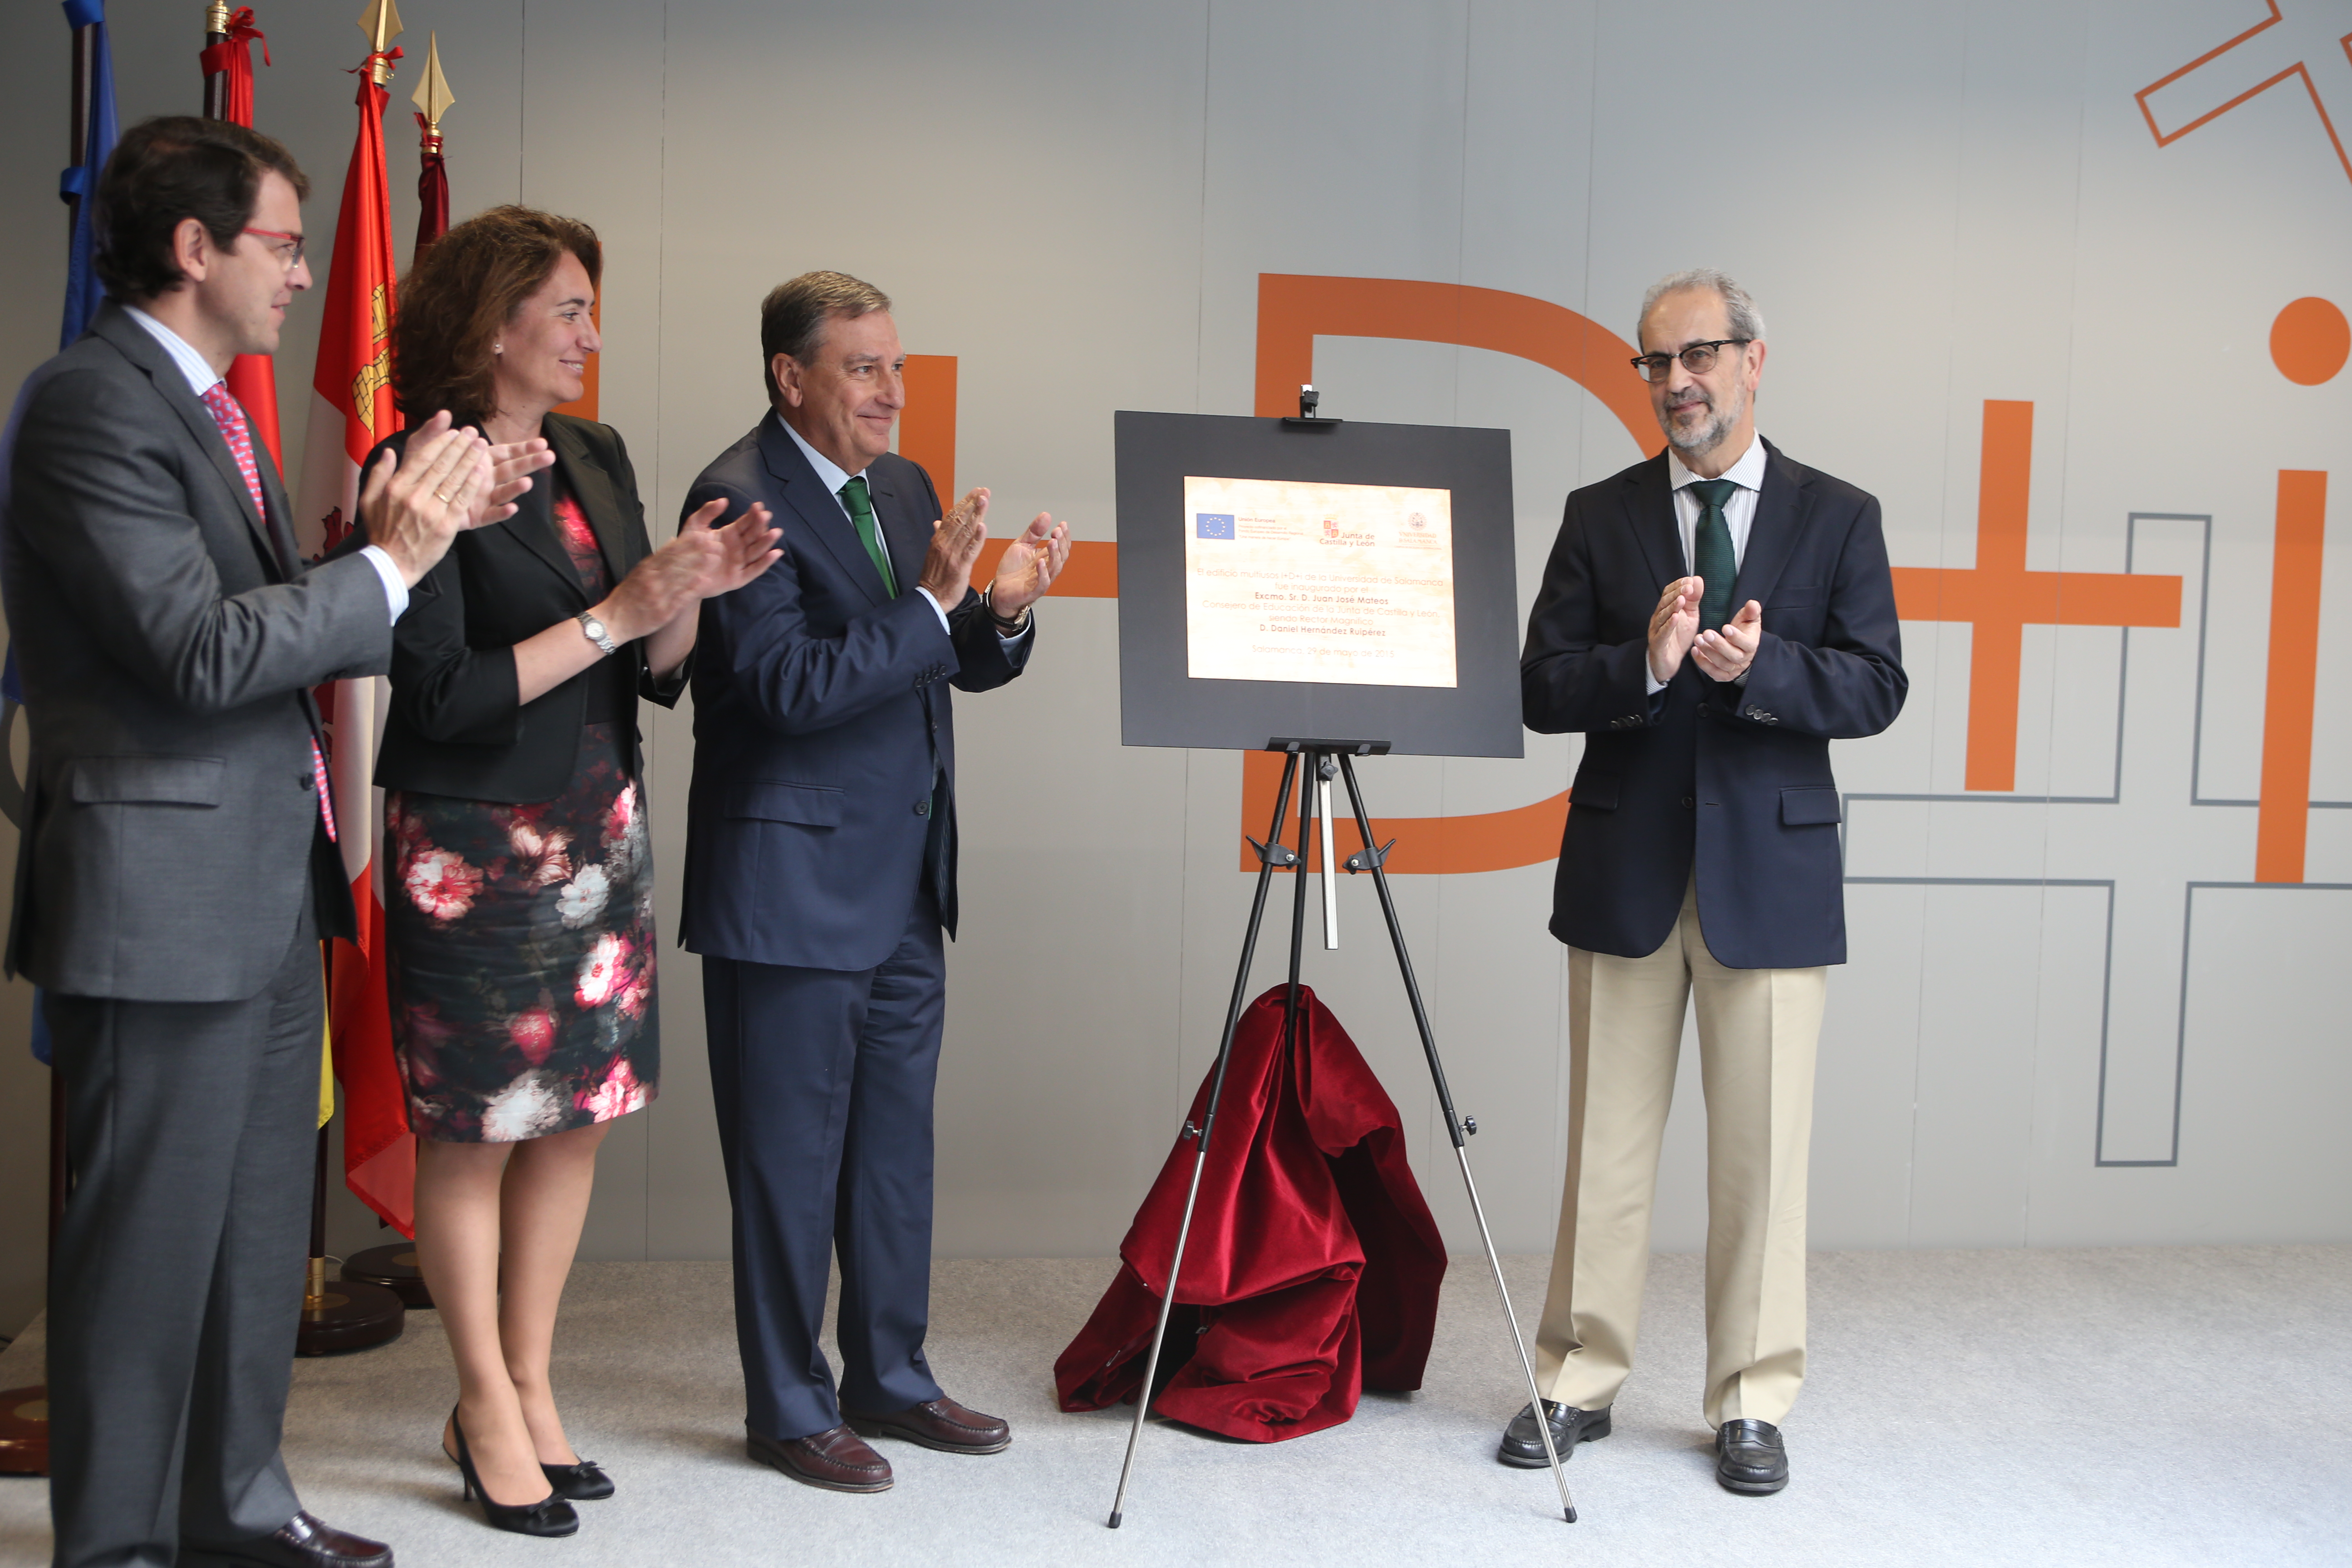 La Universidad de Salamanca impulsa su actividad investigadora con la inauguración de su edificio Multiusos I+D+i